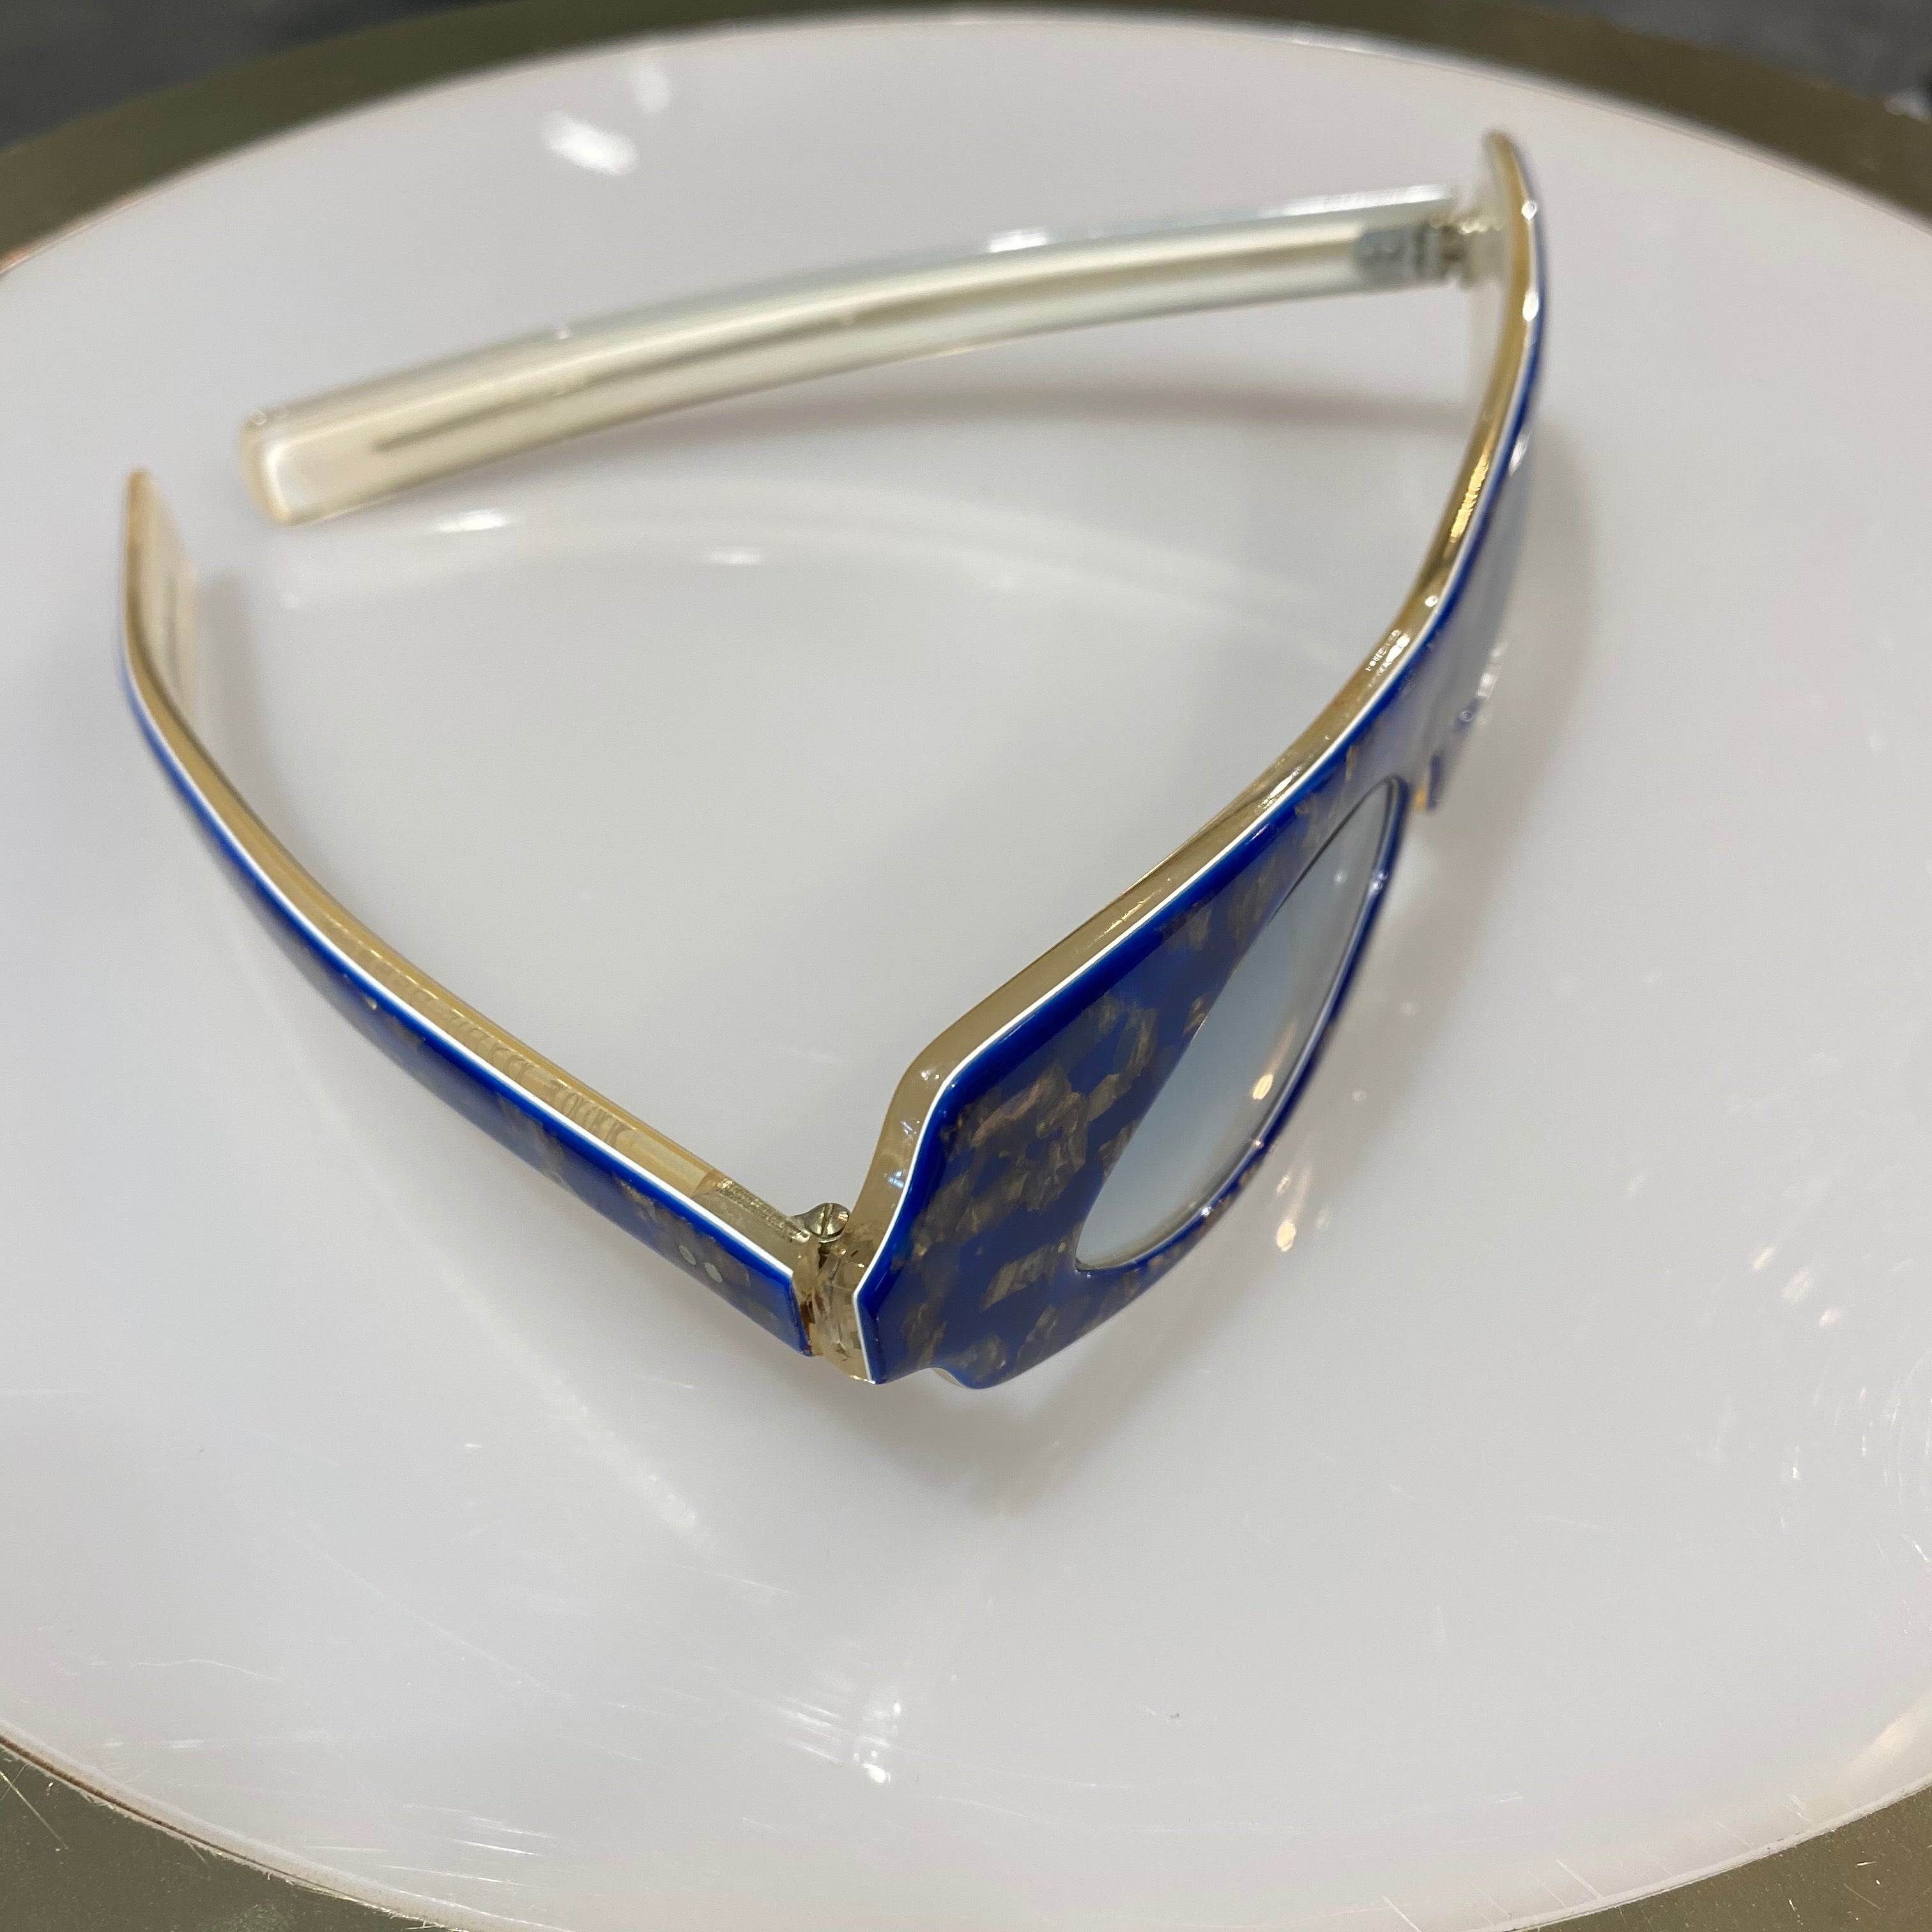 Anne Marie Beretta Iridescent Blue Sunglasses